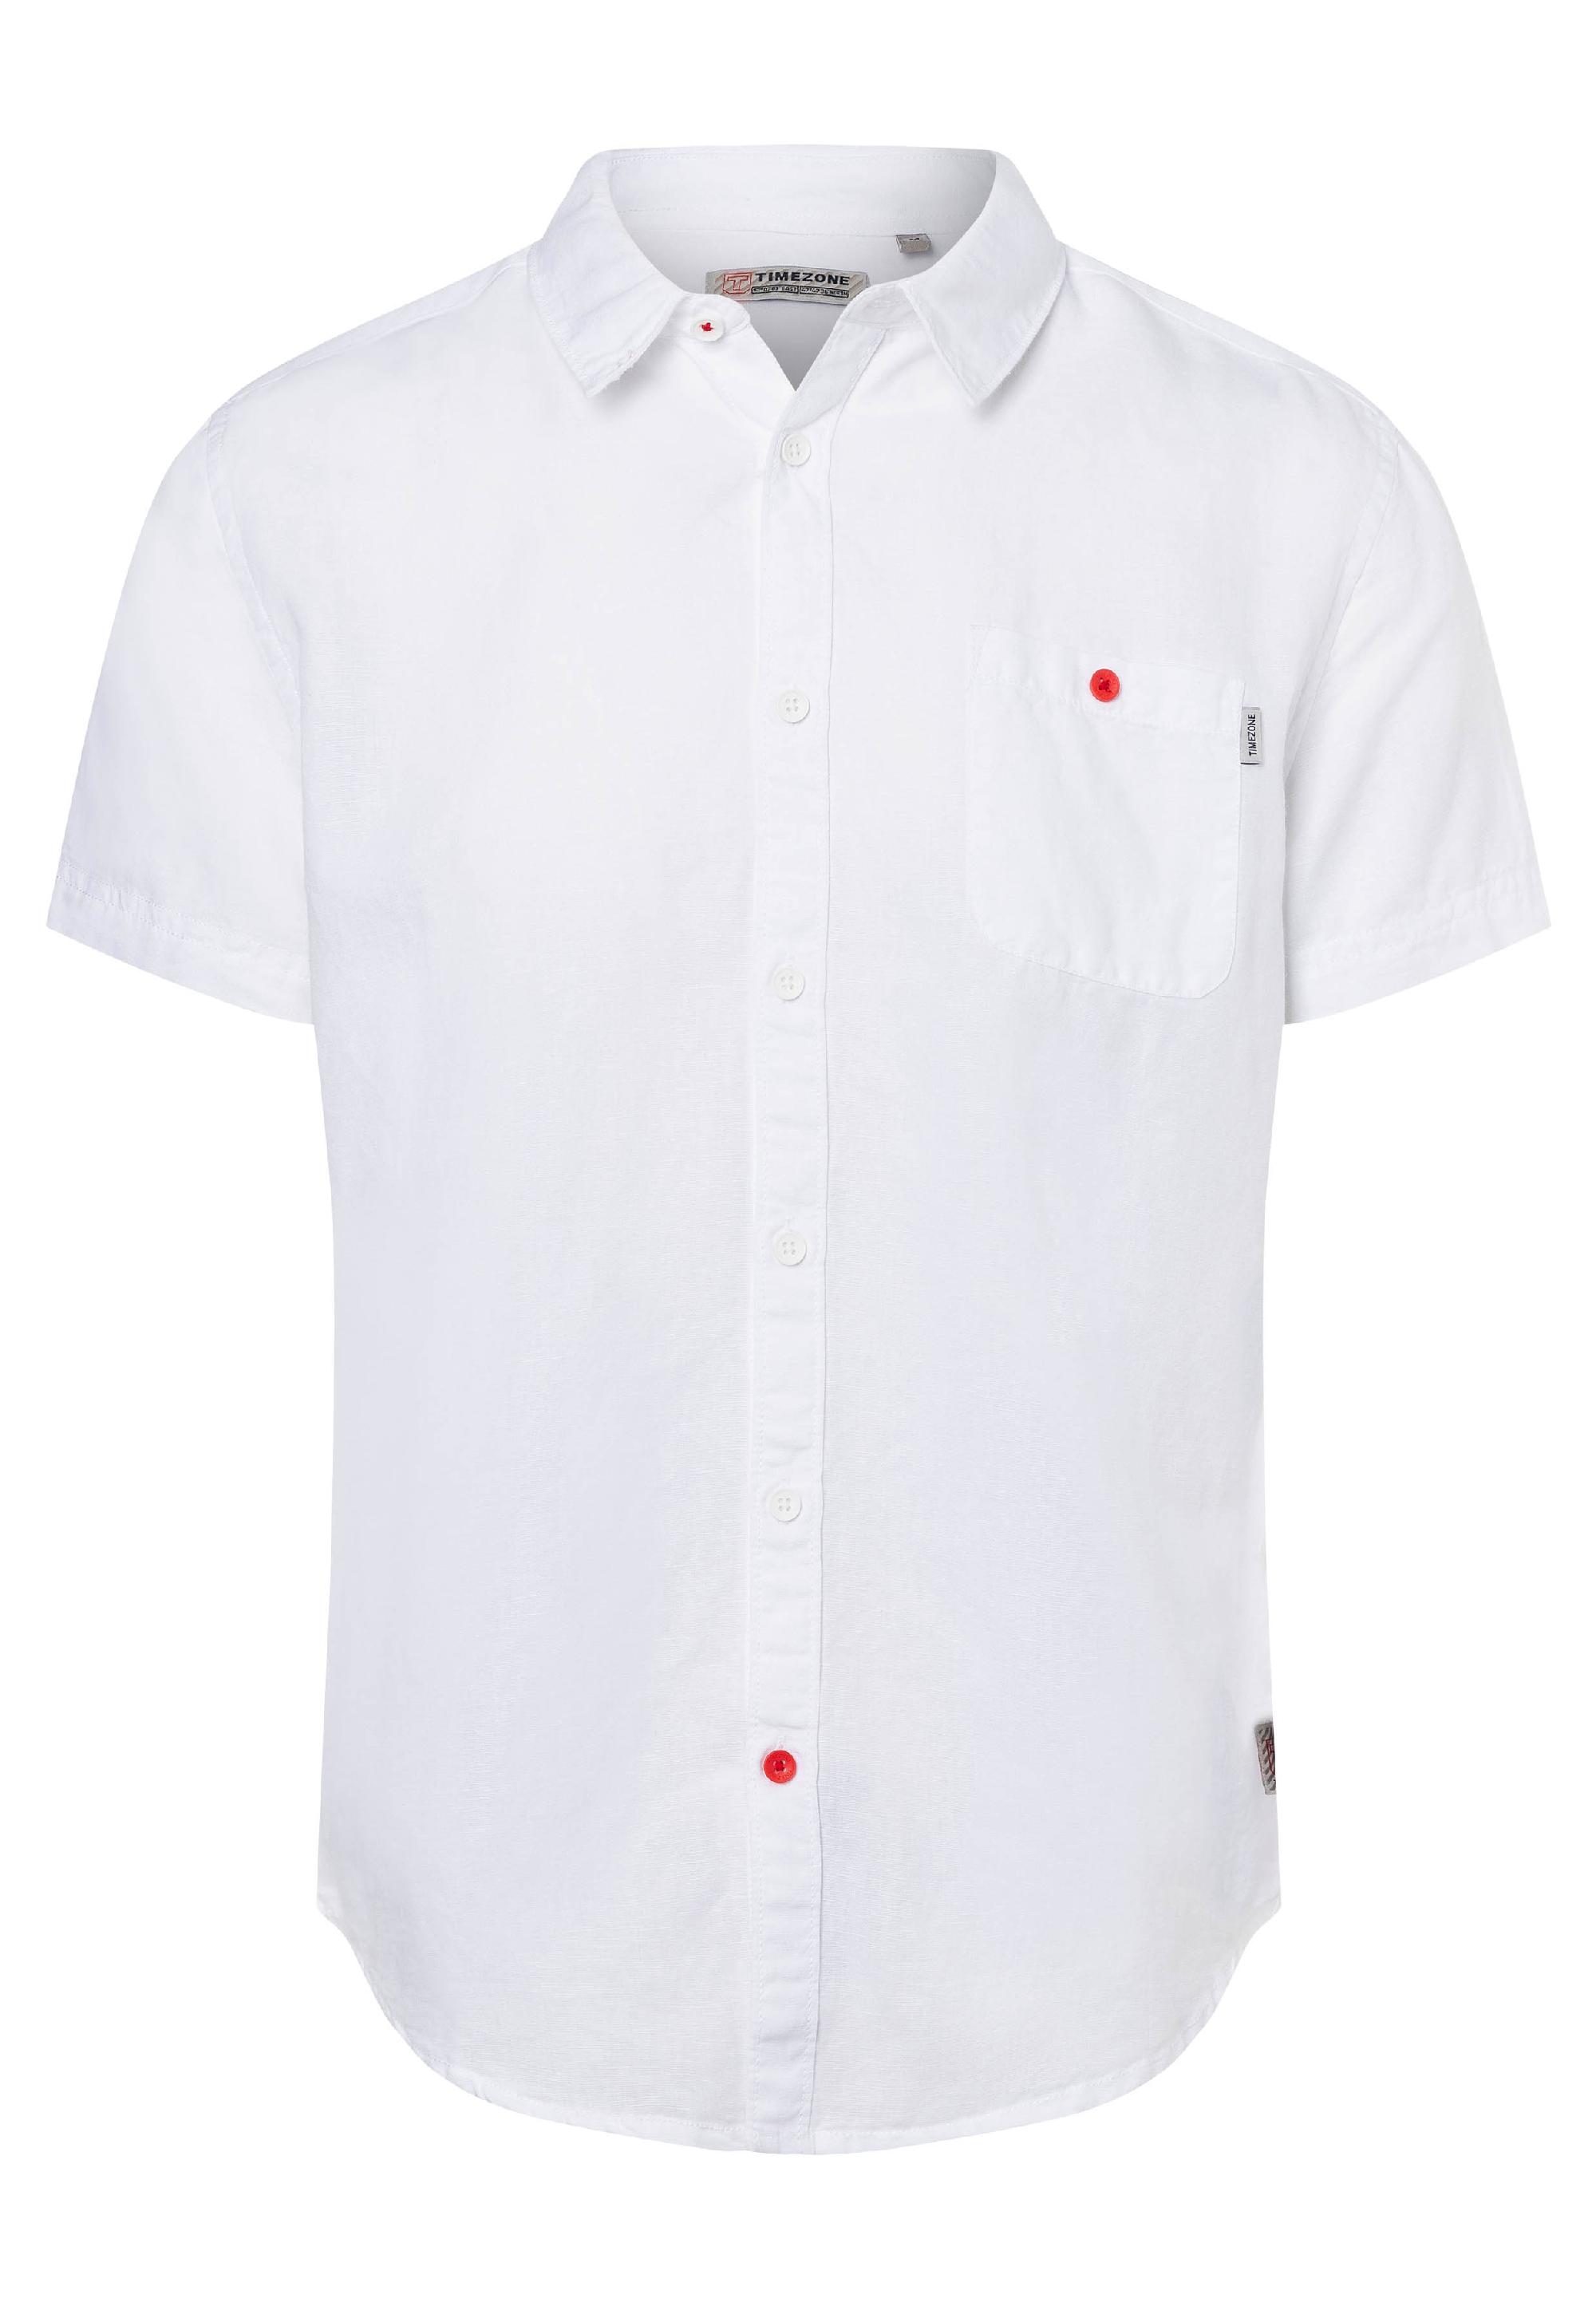 Soft Linen Shortsleeve Shirt